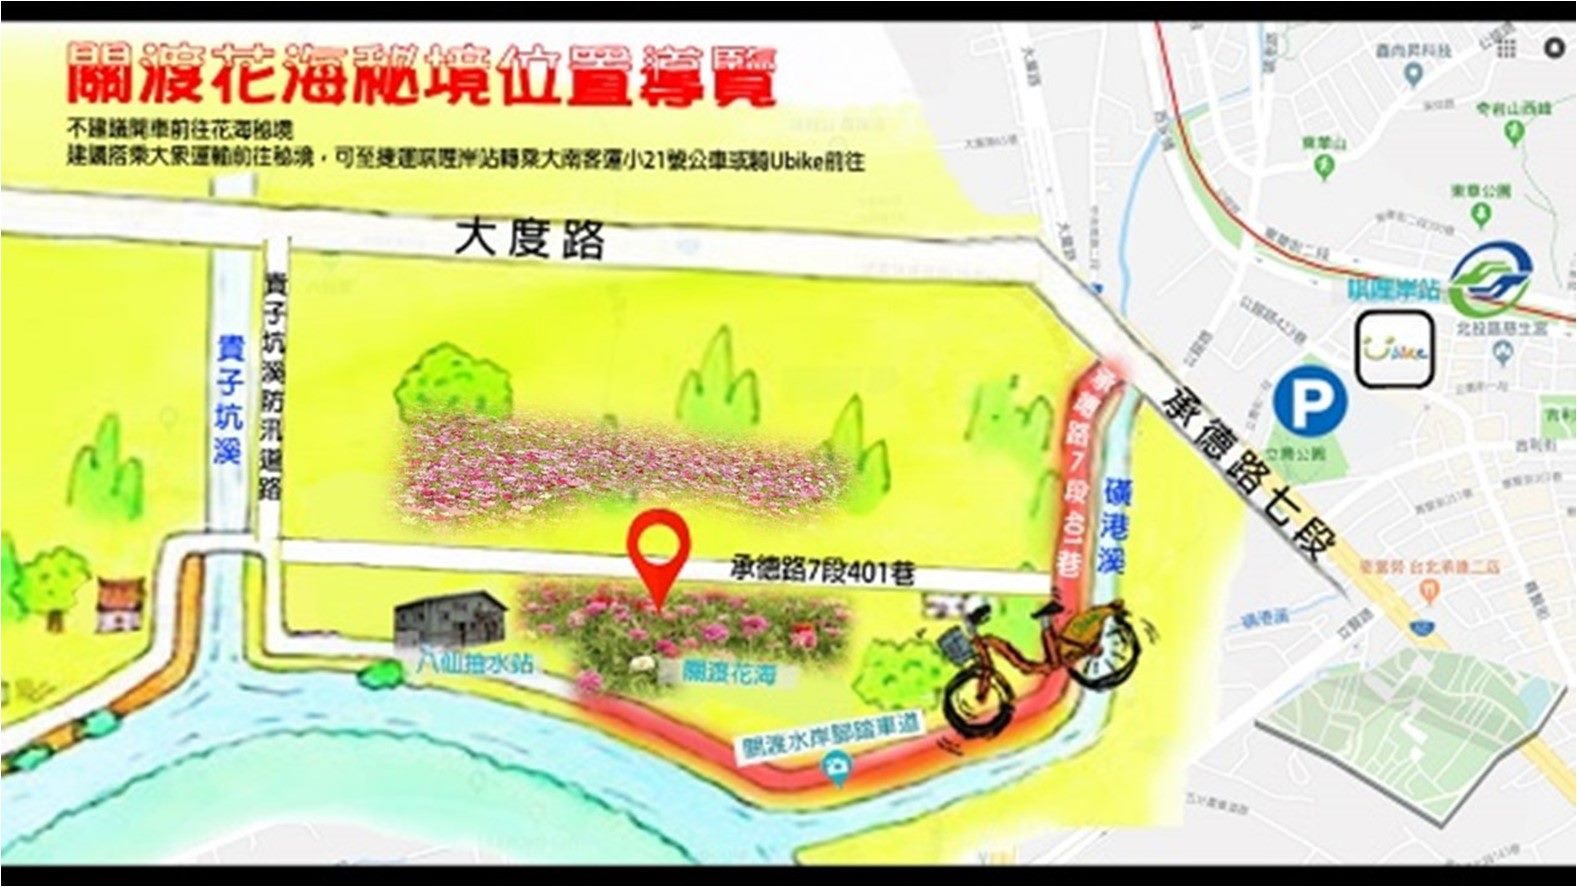 สถานที่ตั้งของทุ่งดอกไม้ (ภาพจาก pwd.gov.taipei/)